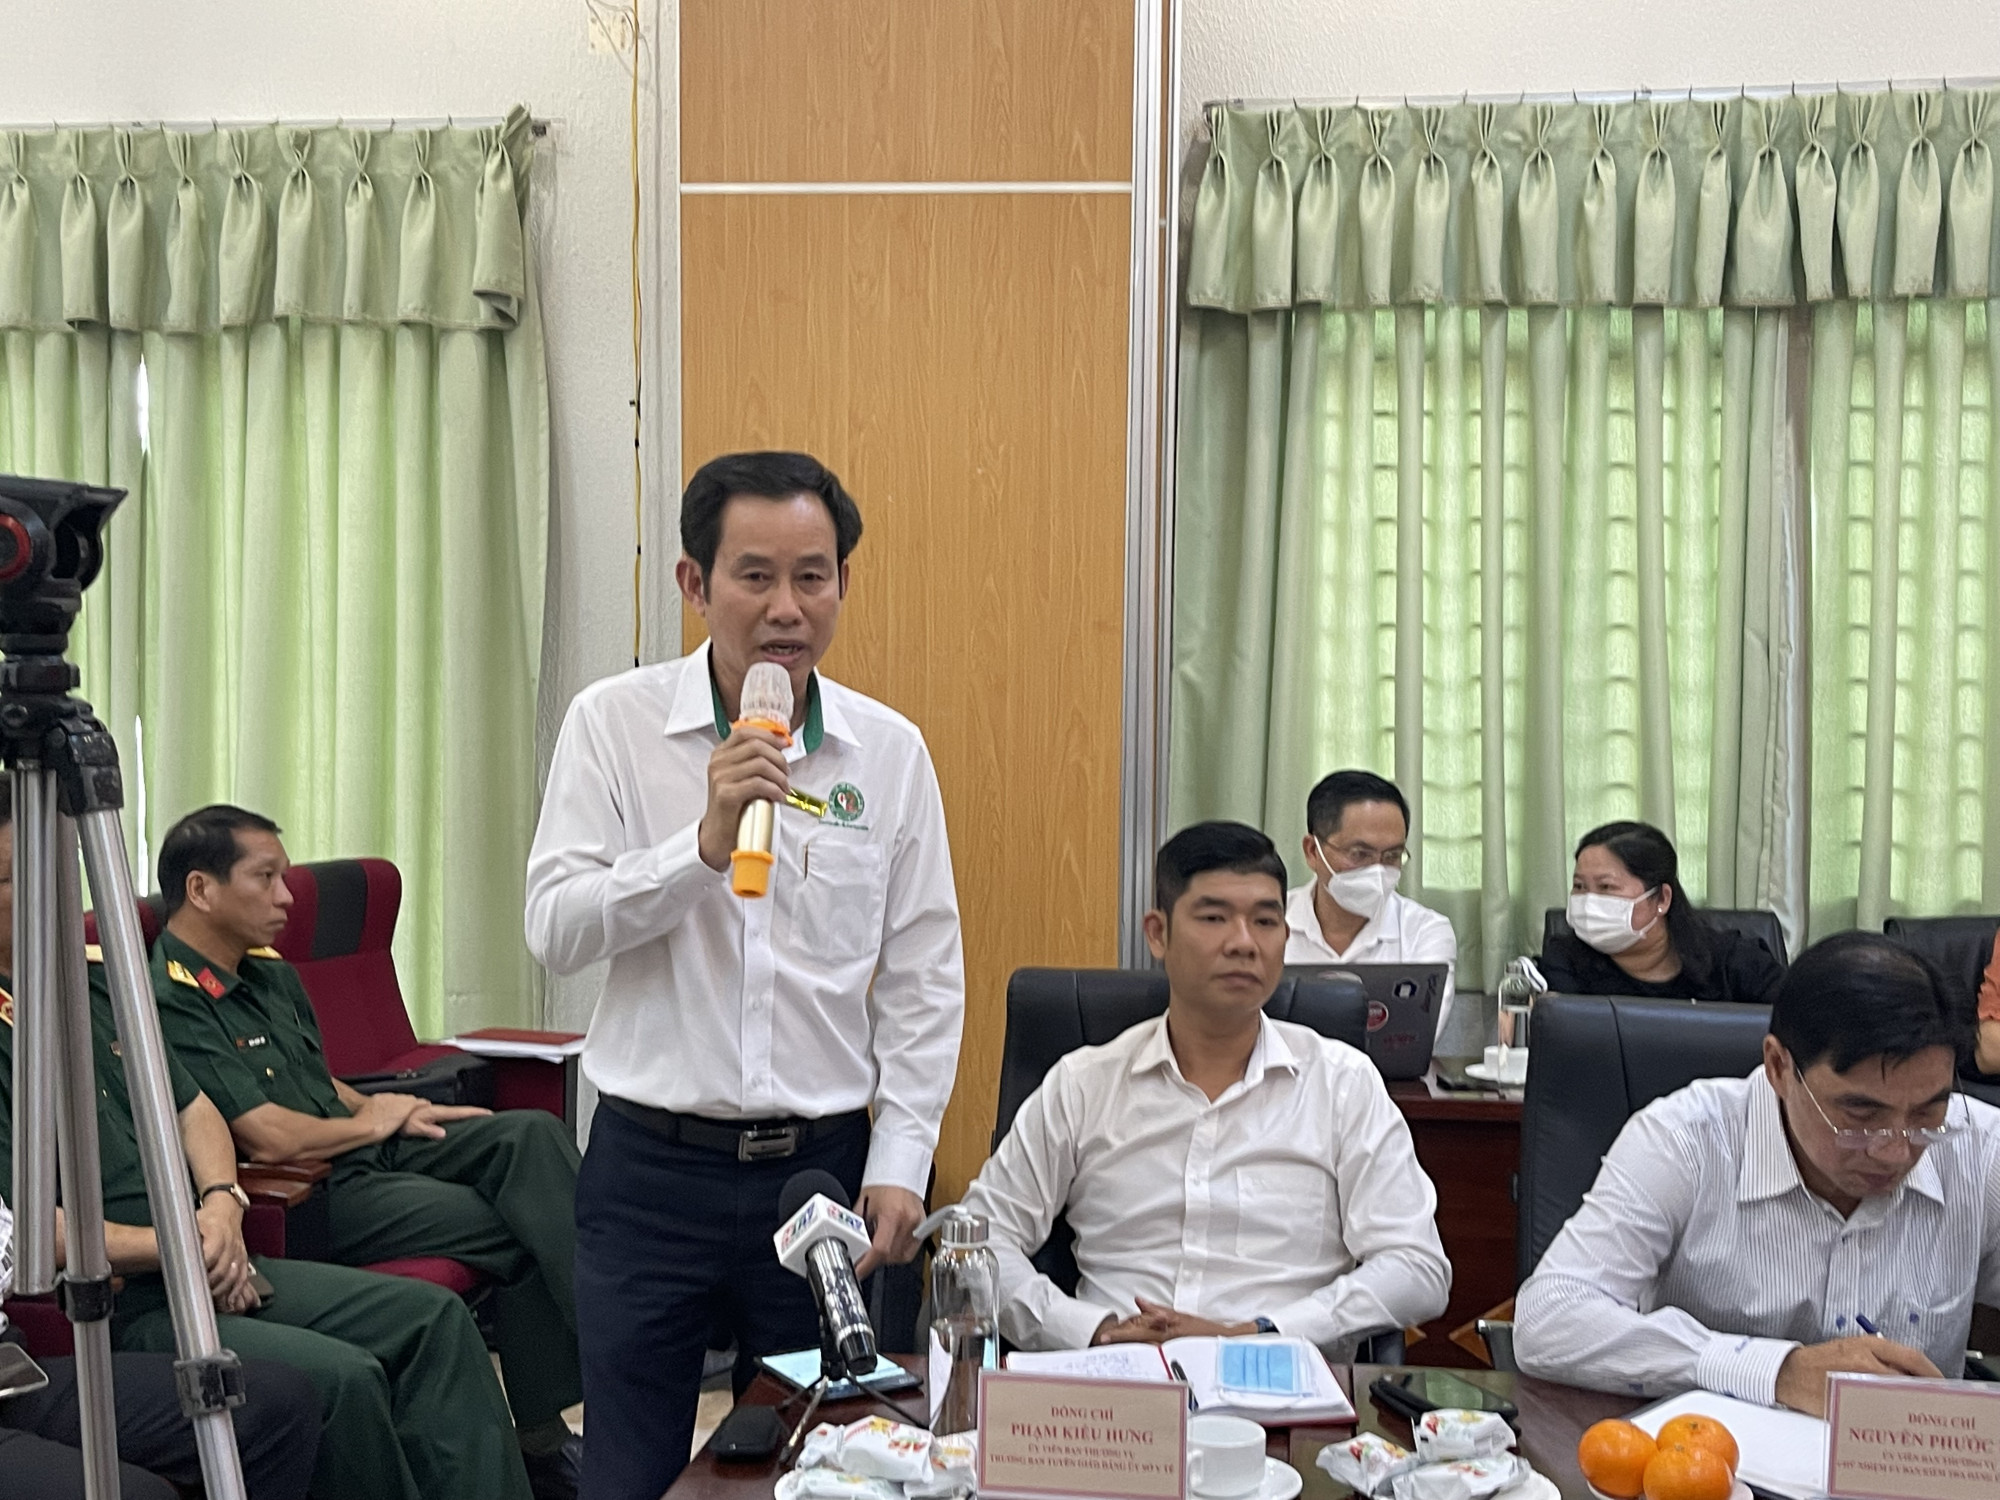 Bác sĩ Trần Văn Khanh - Giám đốc Bệnh viện Lê Văn Thịnh chia sẻ đơn vị mình có 12 nhân viên y tế nghỉ việc. Ảnh: Thanh Huyền.